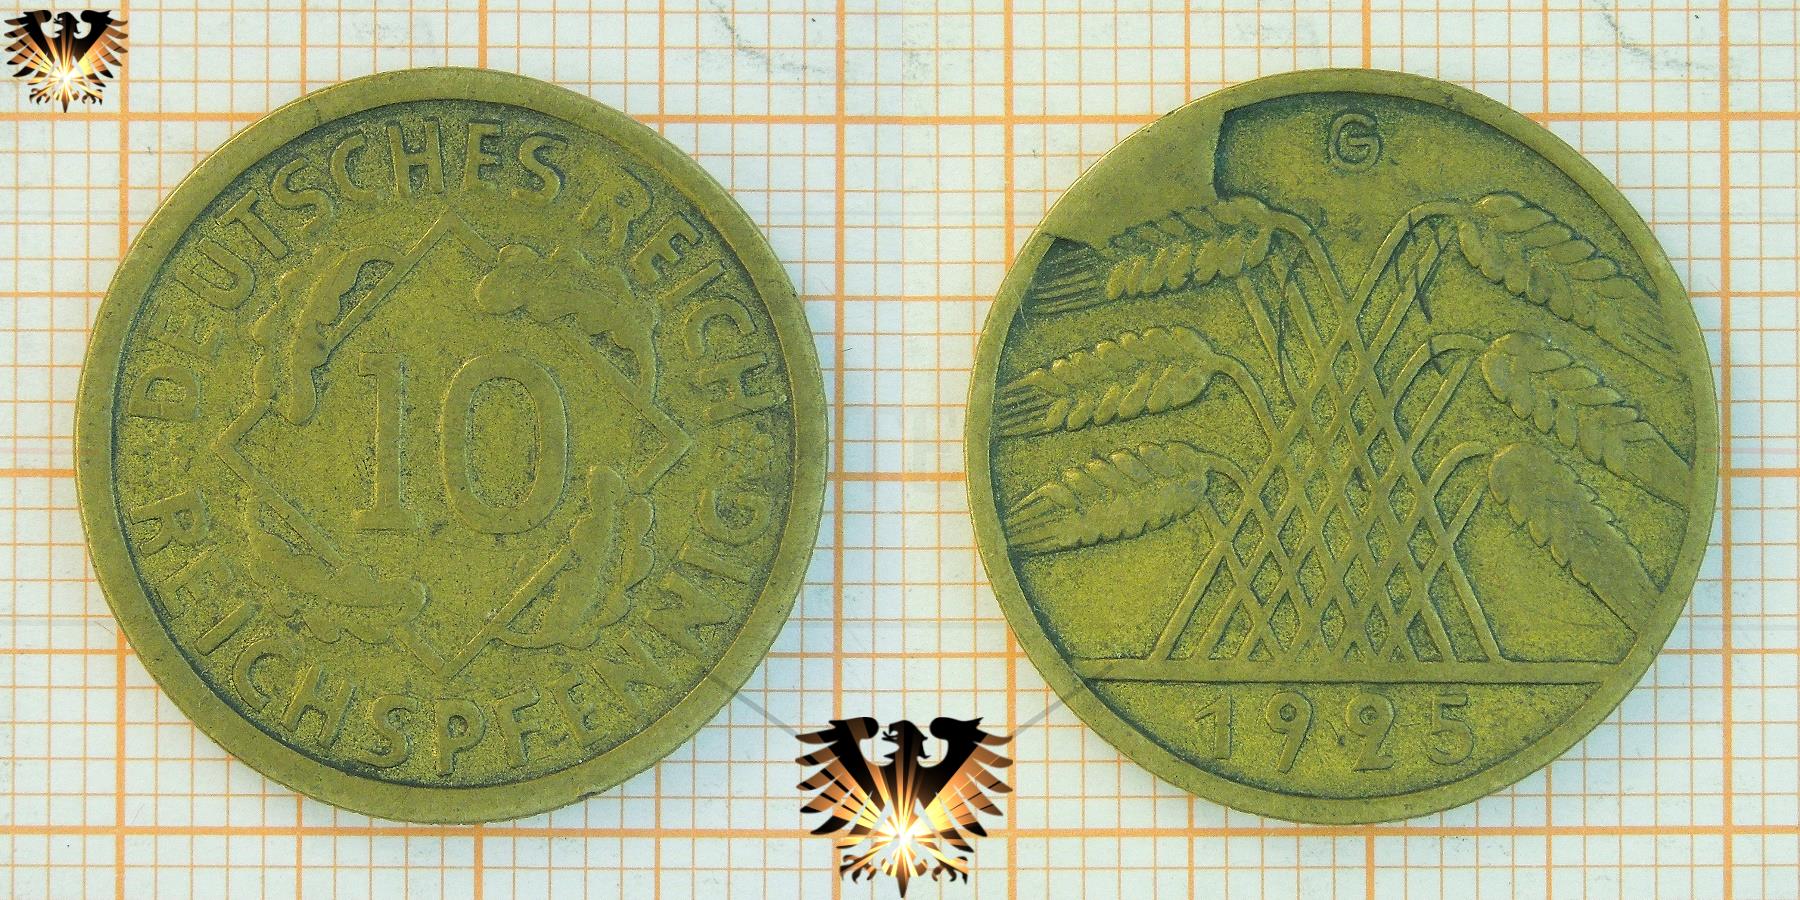 Randfehler auf einem 10 Reichspfennig Stück aus der Weimarer Republik.